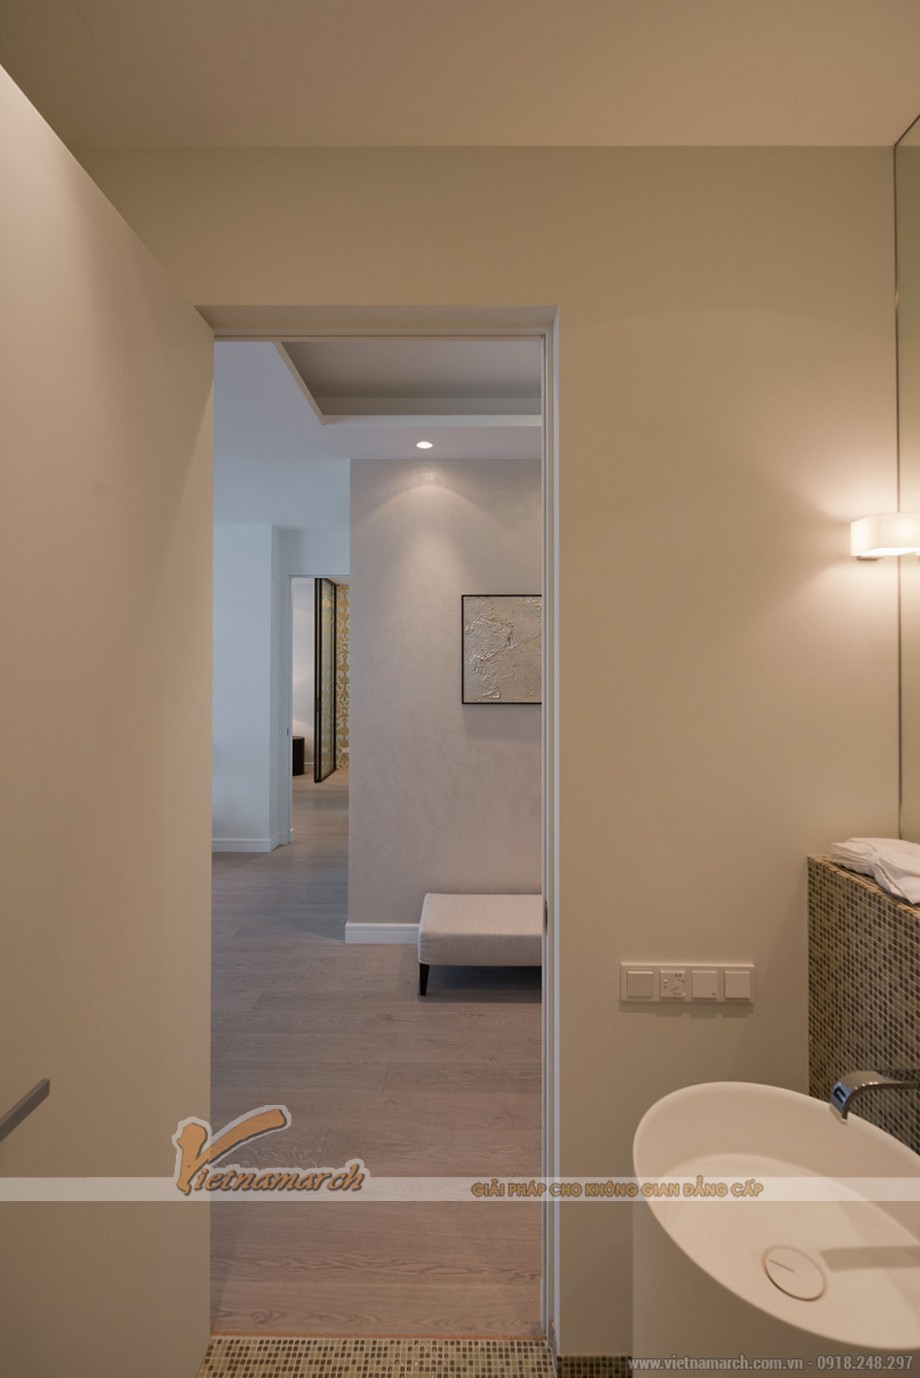 Ý TƯỞNG: Thiết kế căn hộ Park Hill Times City – Style hiện đại > Phòng tắm hiện đại